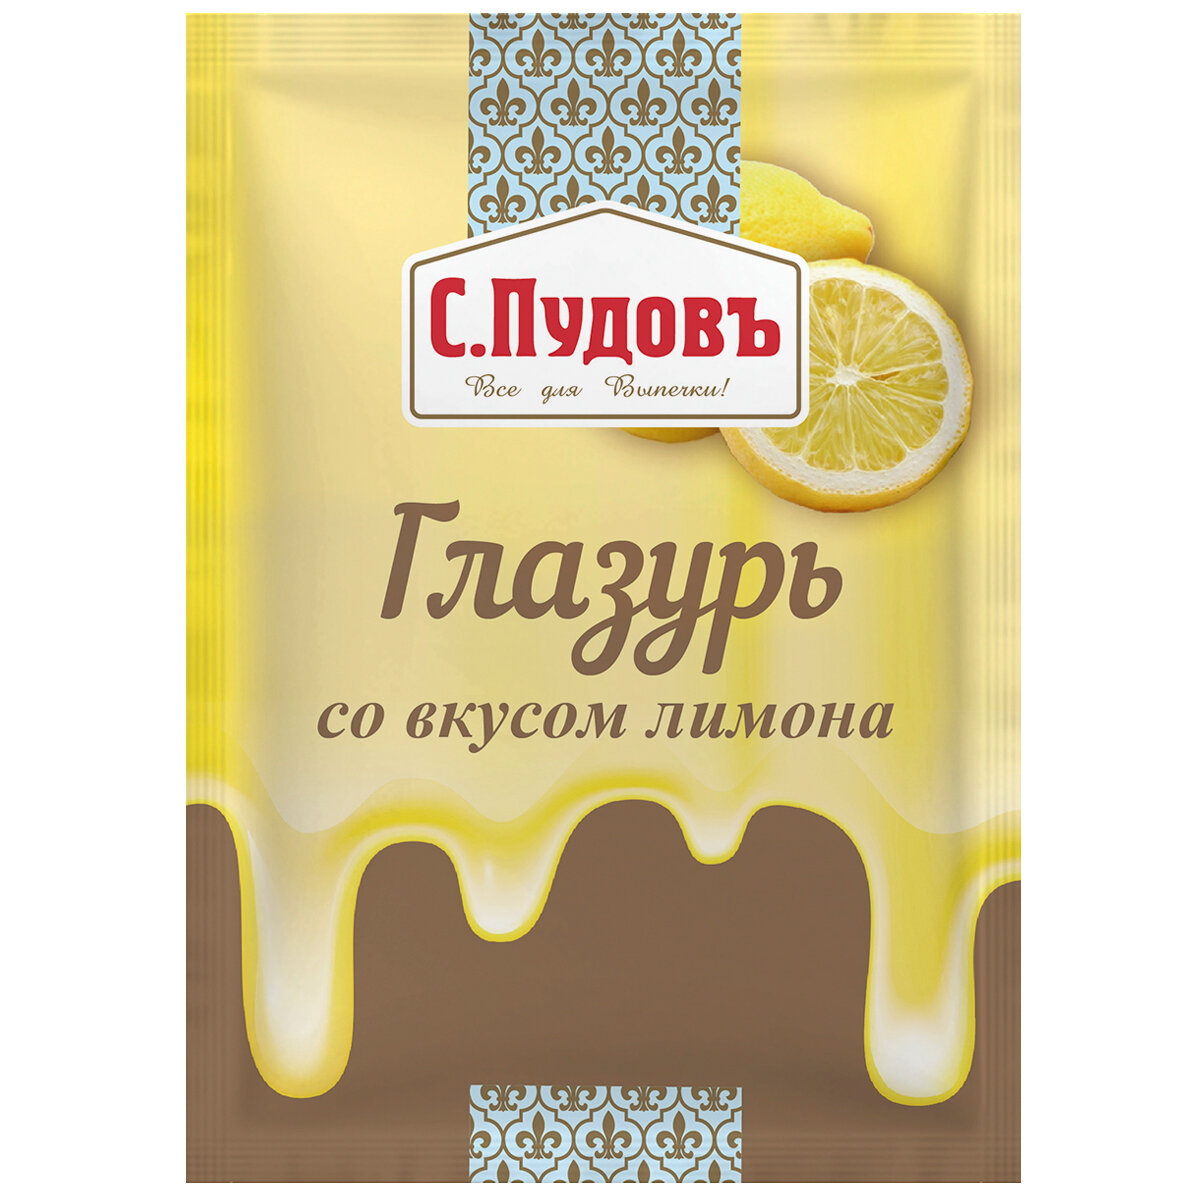 Сахарная глазурь С. Пудовъ Со вкусом лимона 100 г